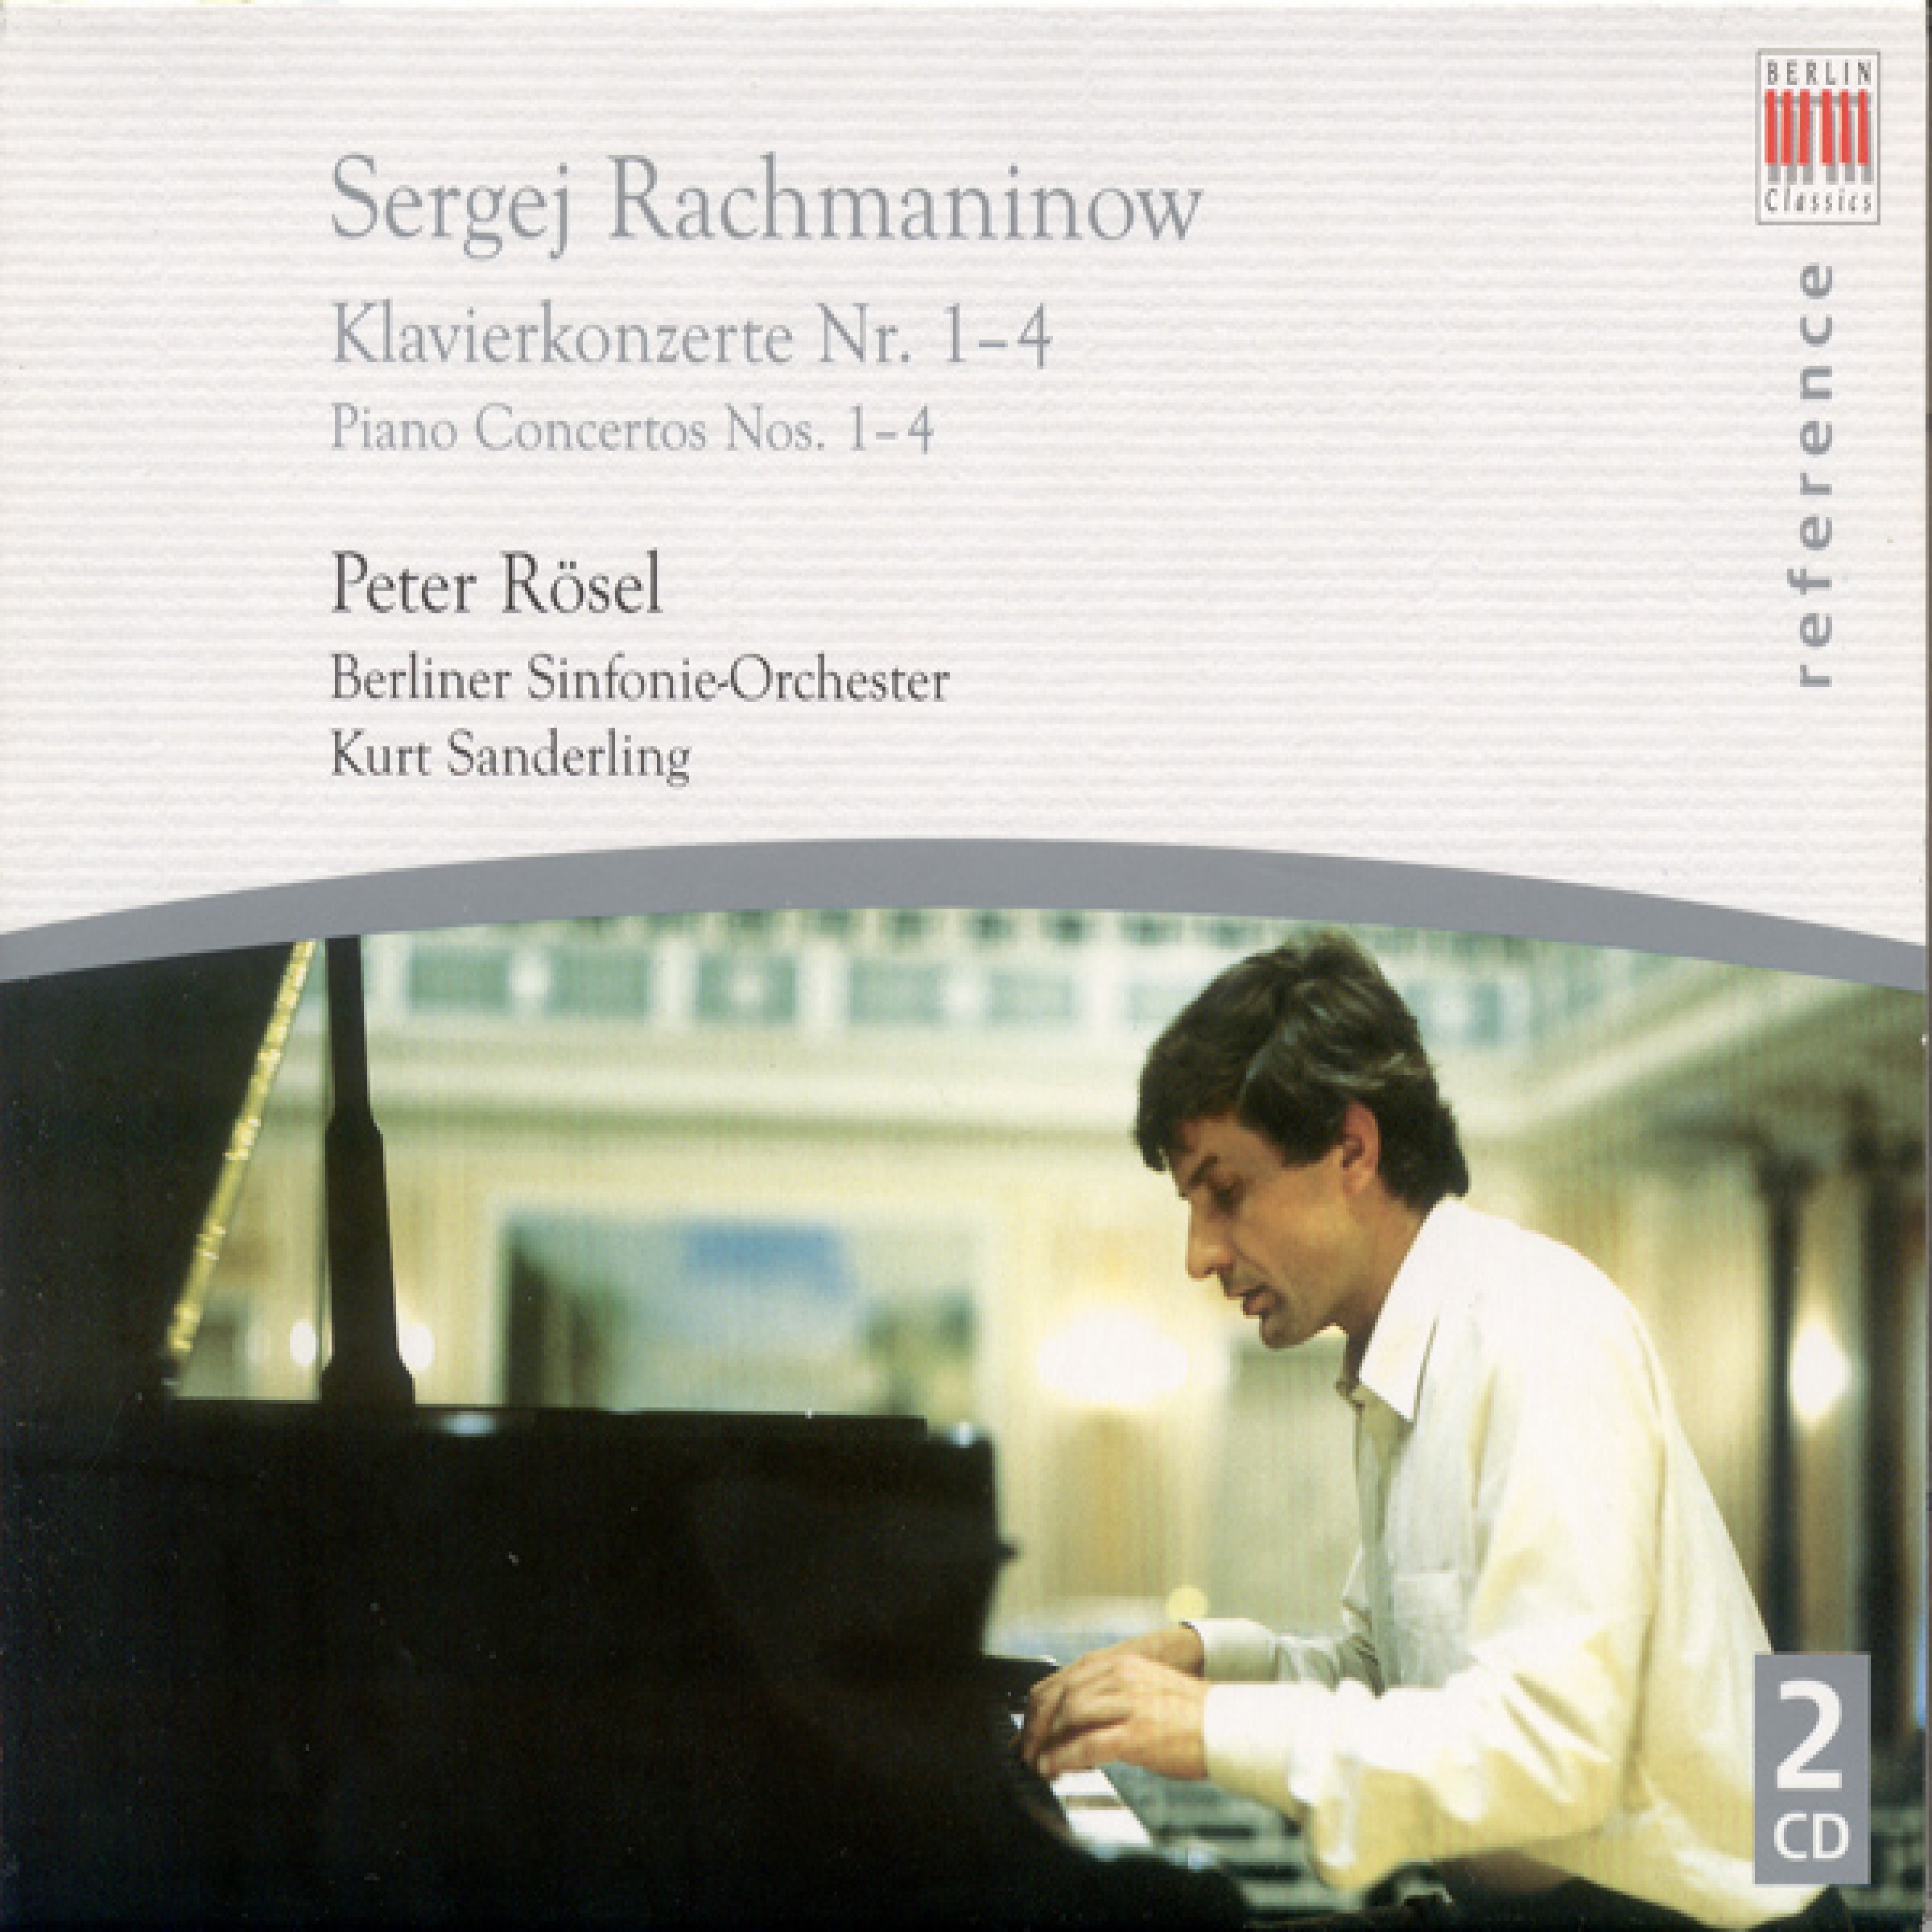 Sergej Rachmaninoff: Piano Concertos Nos. 1-4 (Rosel, Berlin Symphony, K. Sanderling)